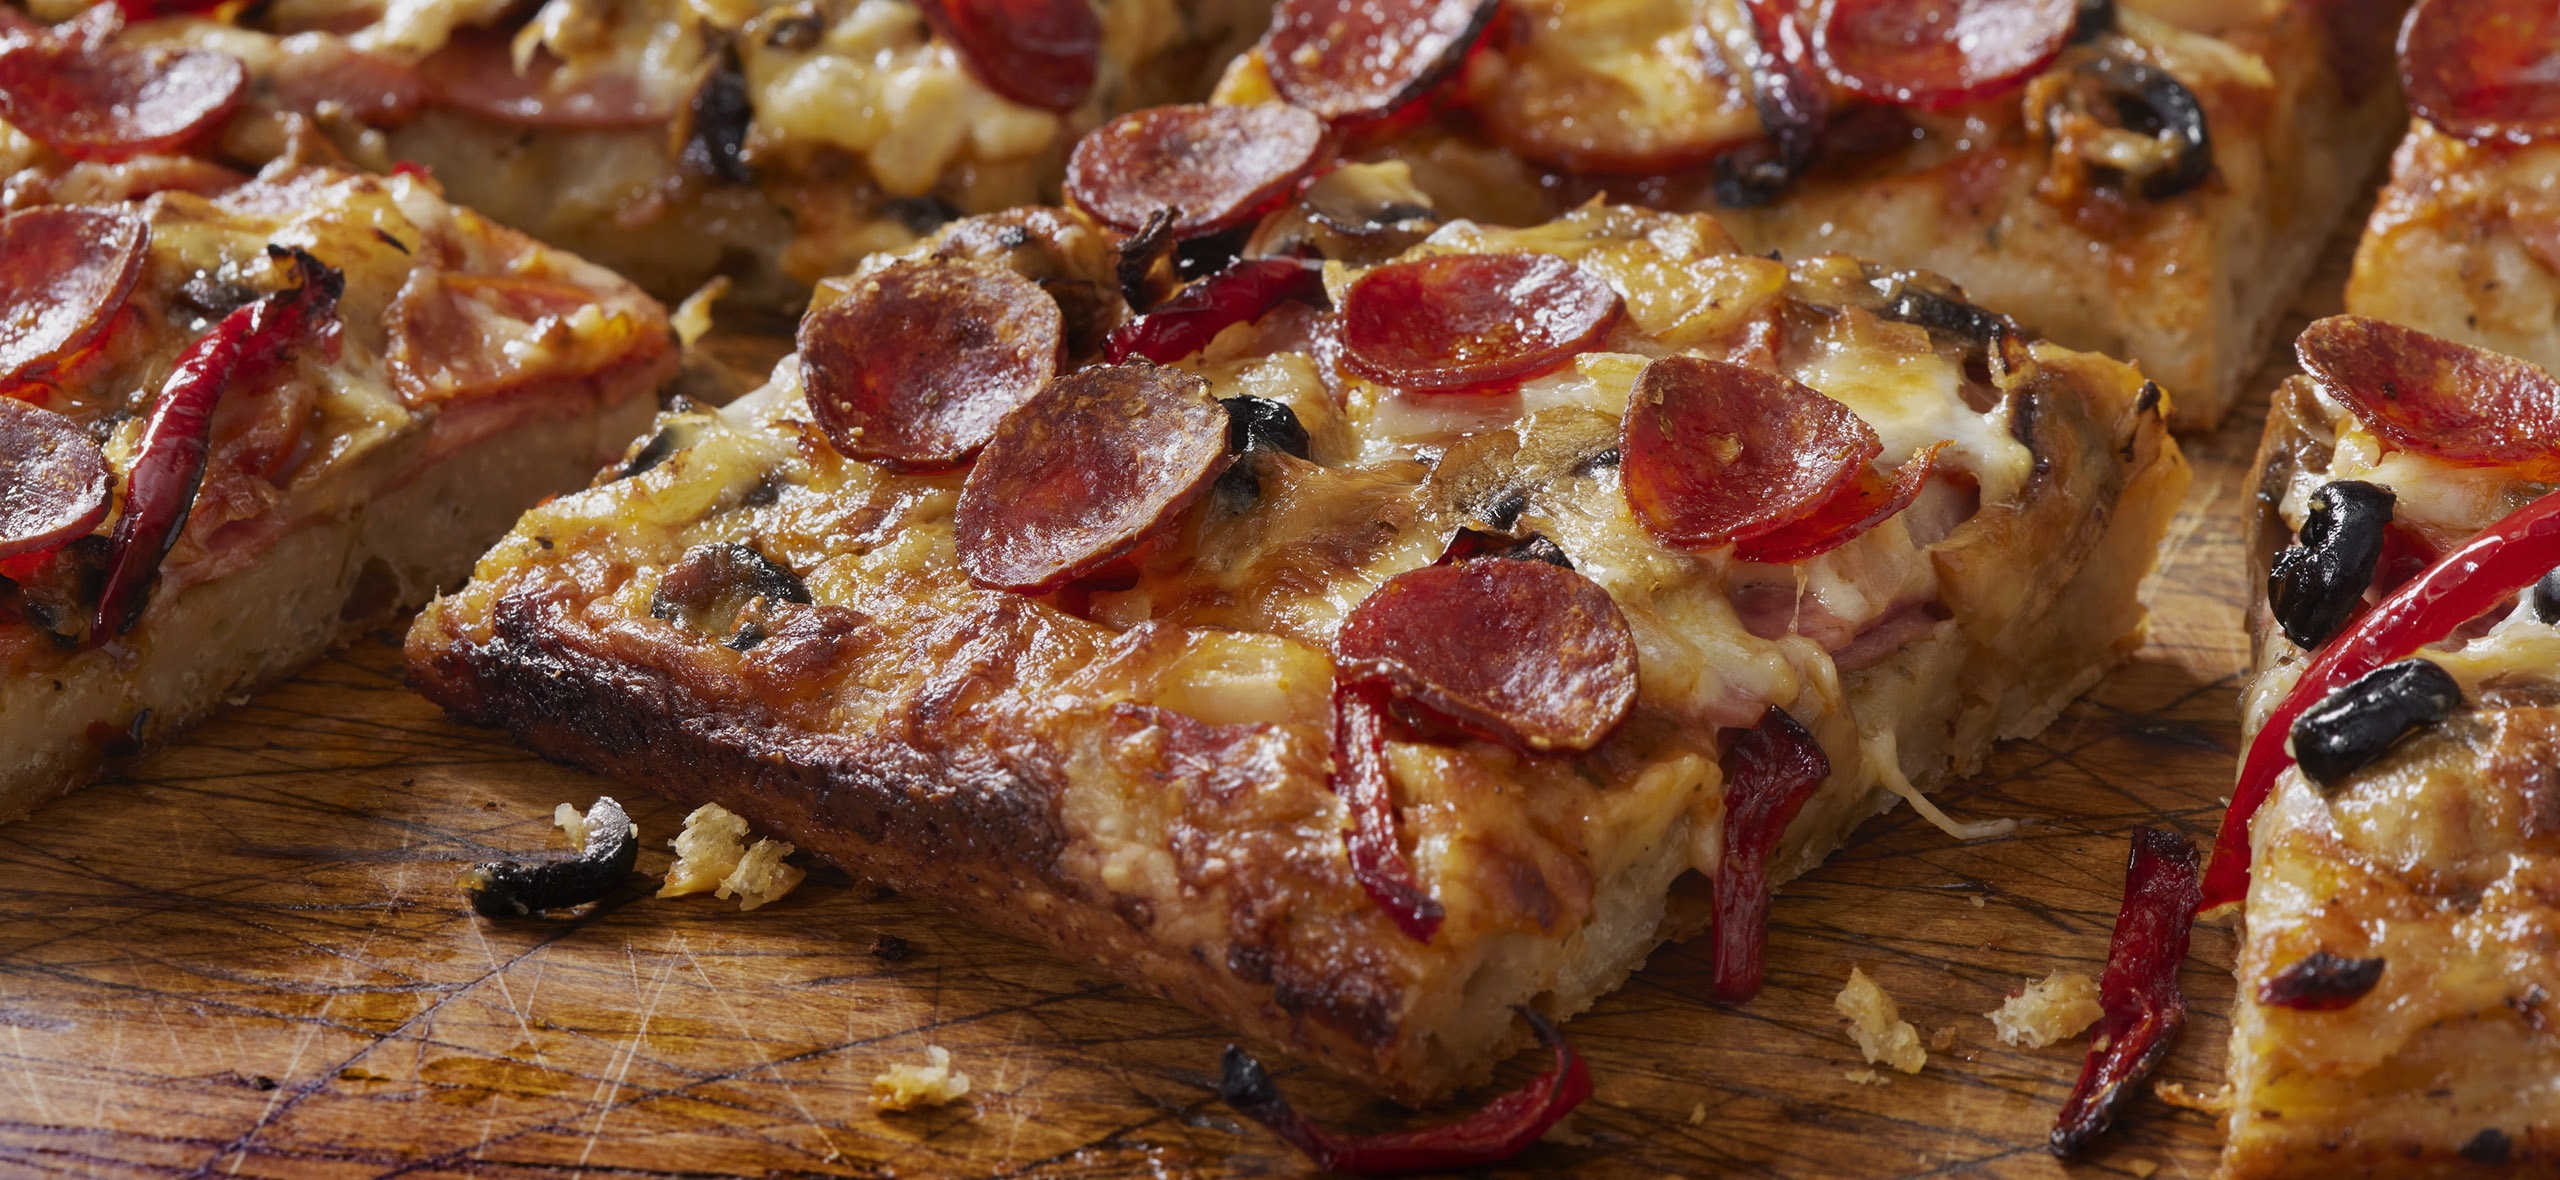 Домашняя пицца (на тонком тесте) - Кулинарный пошаговый рецепт с фото.